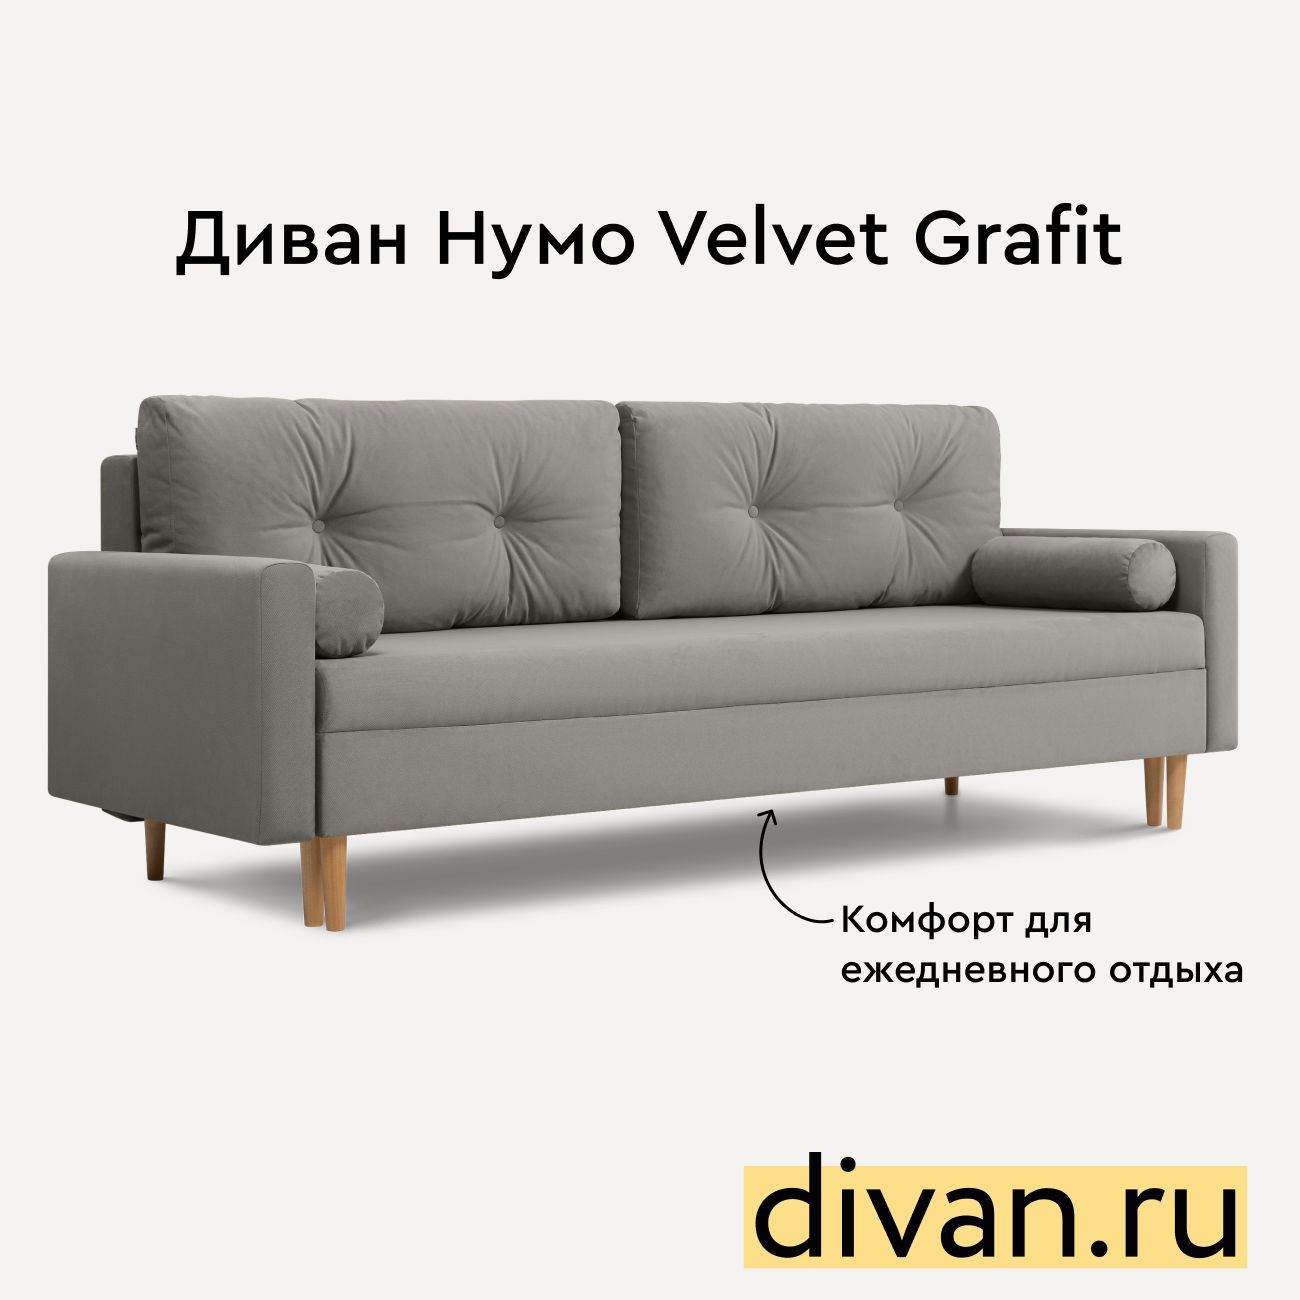 Диван Divan.ru прямой Нумо Velvet Grafit - купить в Москве, цены на Мегамаркет | 600016270971